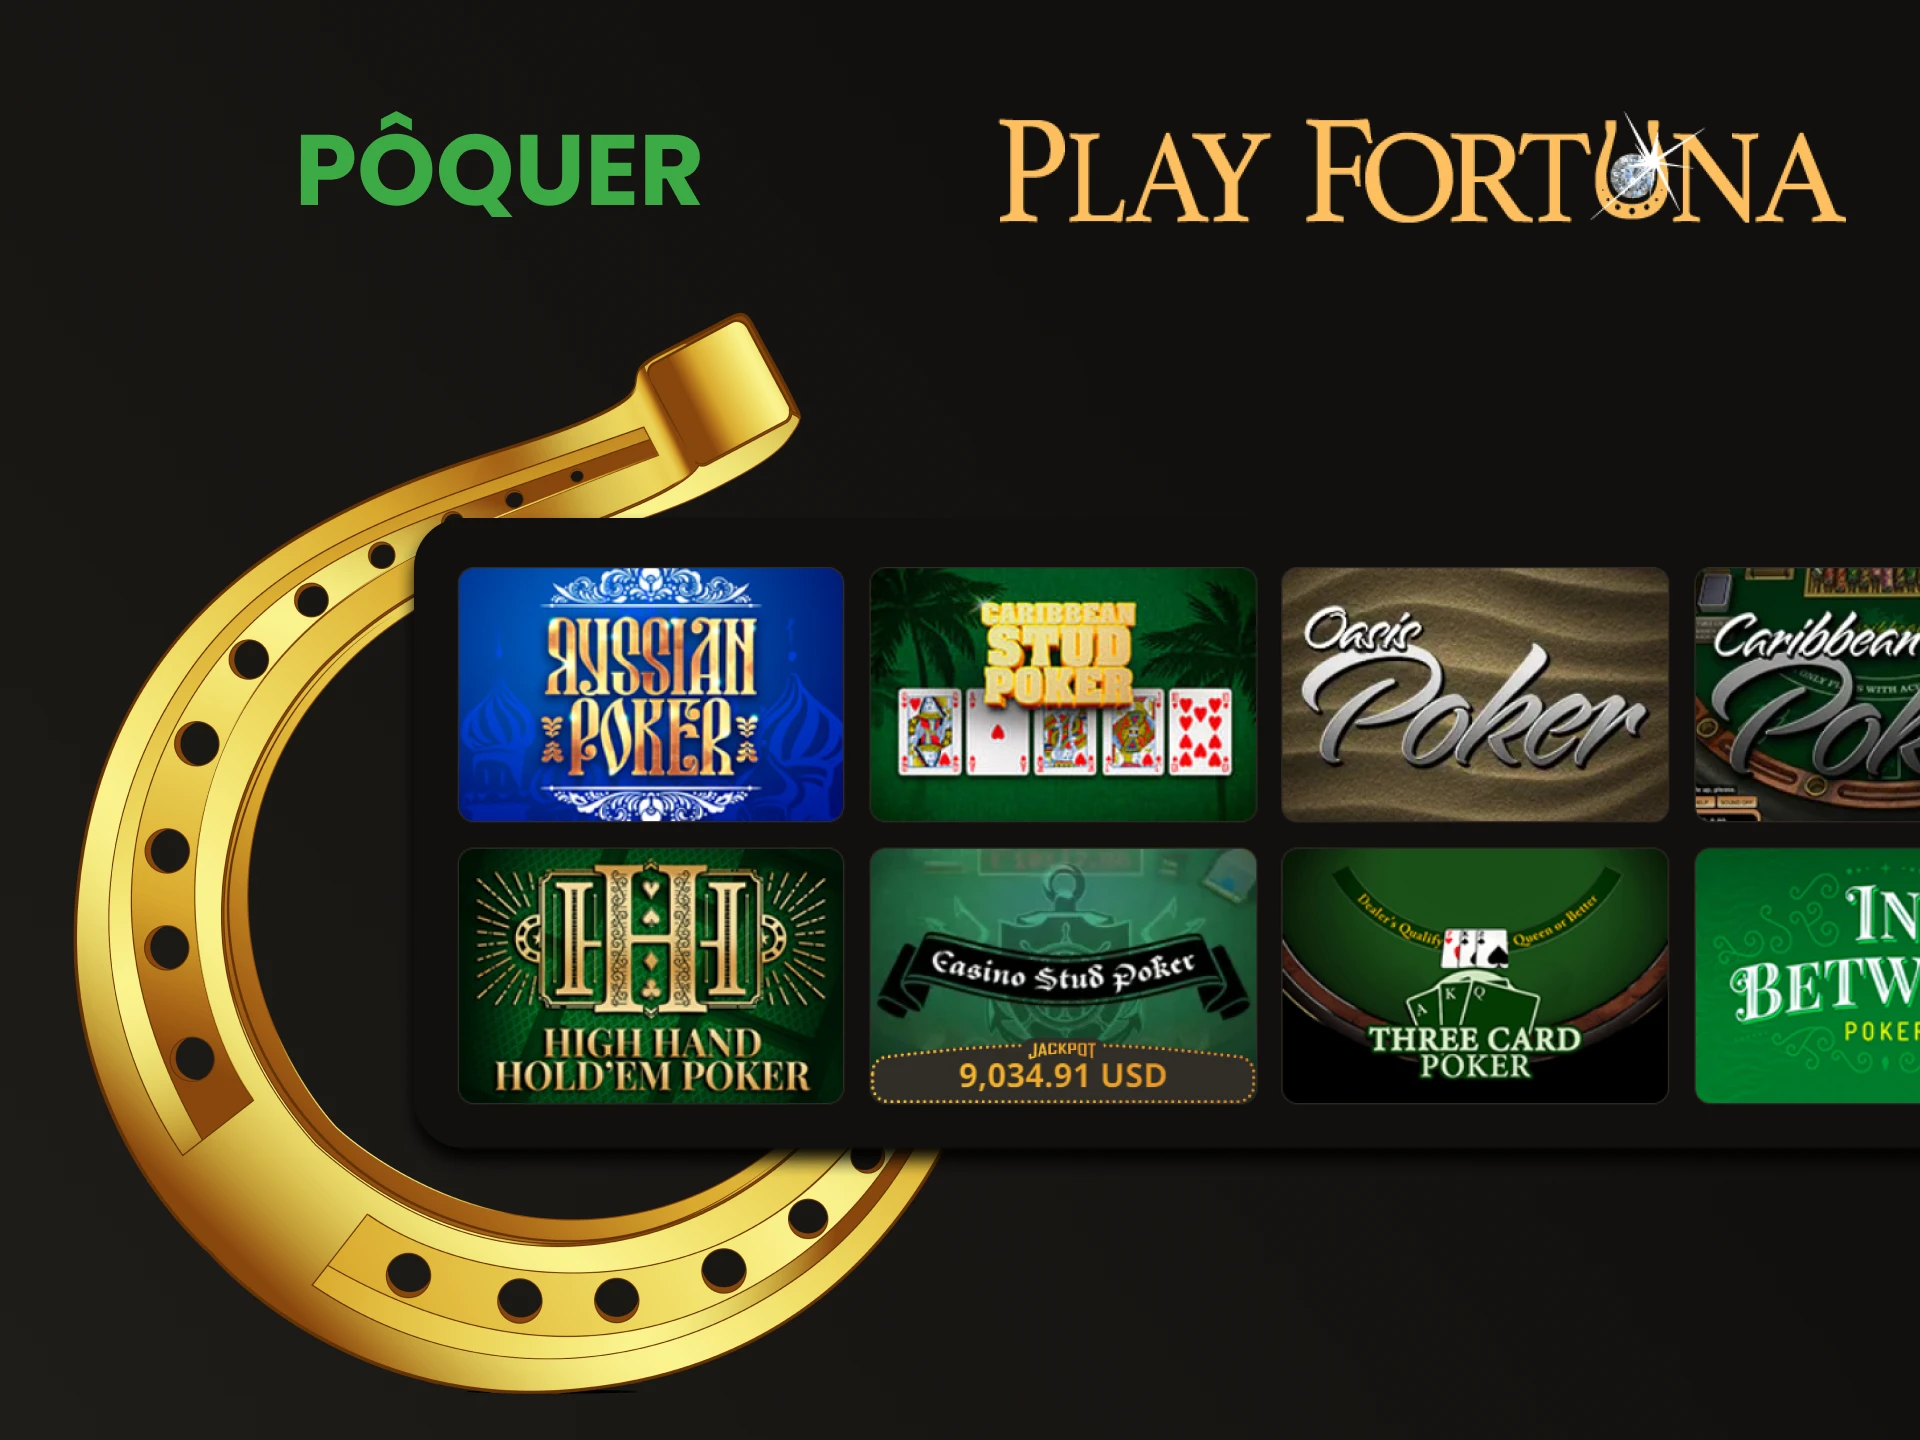 Para jogos de tabuleiro no Play Fortuna, escolha Poquer.